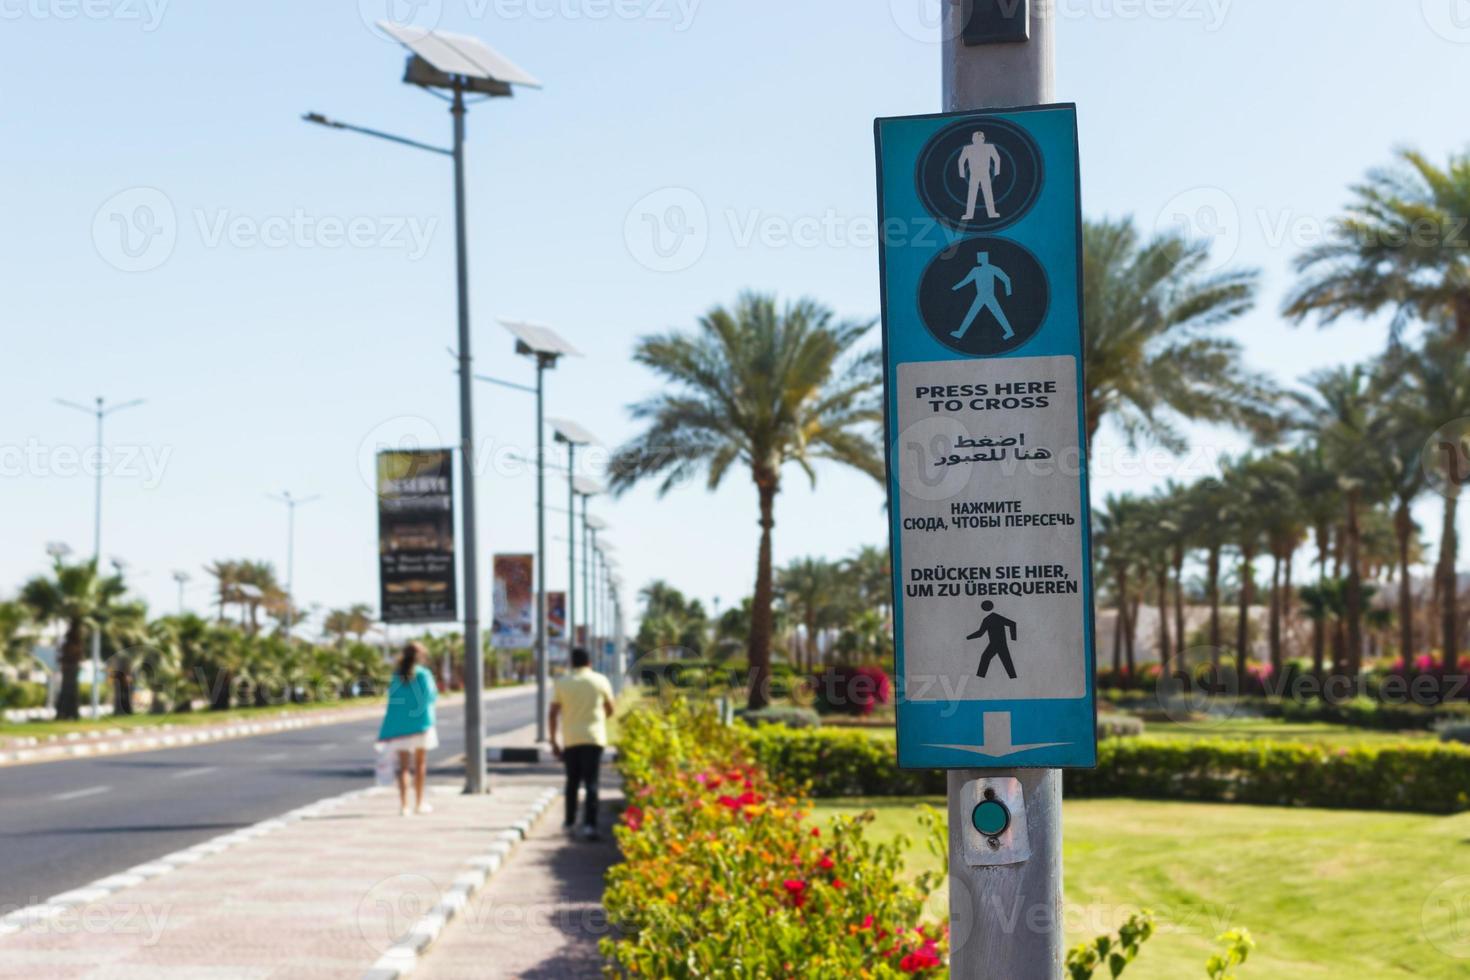 botão para chamar a passagem de pedestres com a seta para cima. clique aqui para cruzá-lo escrito em quatro idiomas inglês, árabe, russo e alemão foto